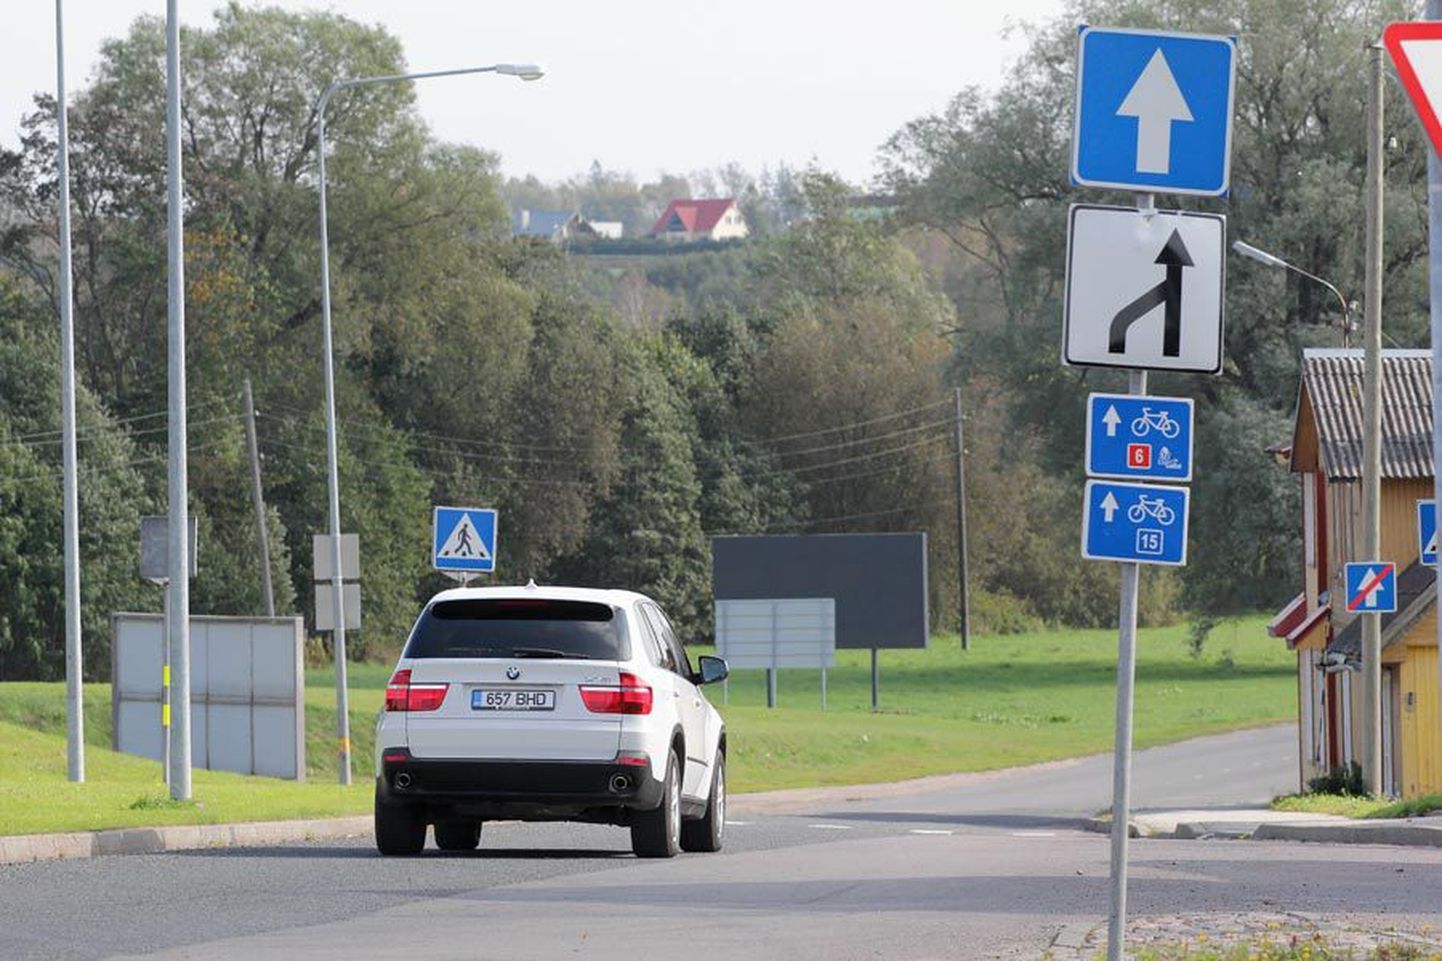 Jakobsoni tänaval sõidavad paljud autojuhid valest reast Tartu maanteele. Joonte puudumine lihtsustab eksimist.